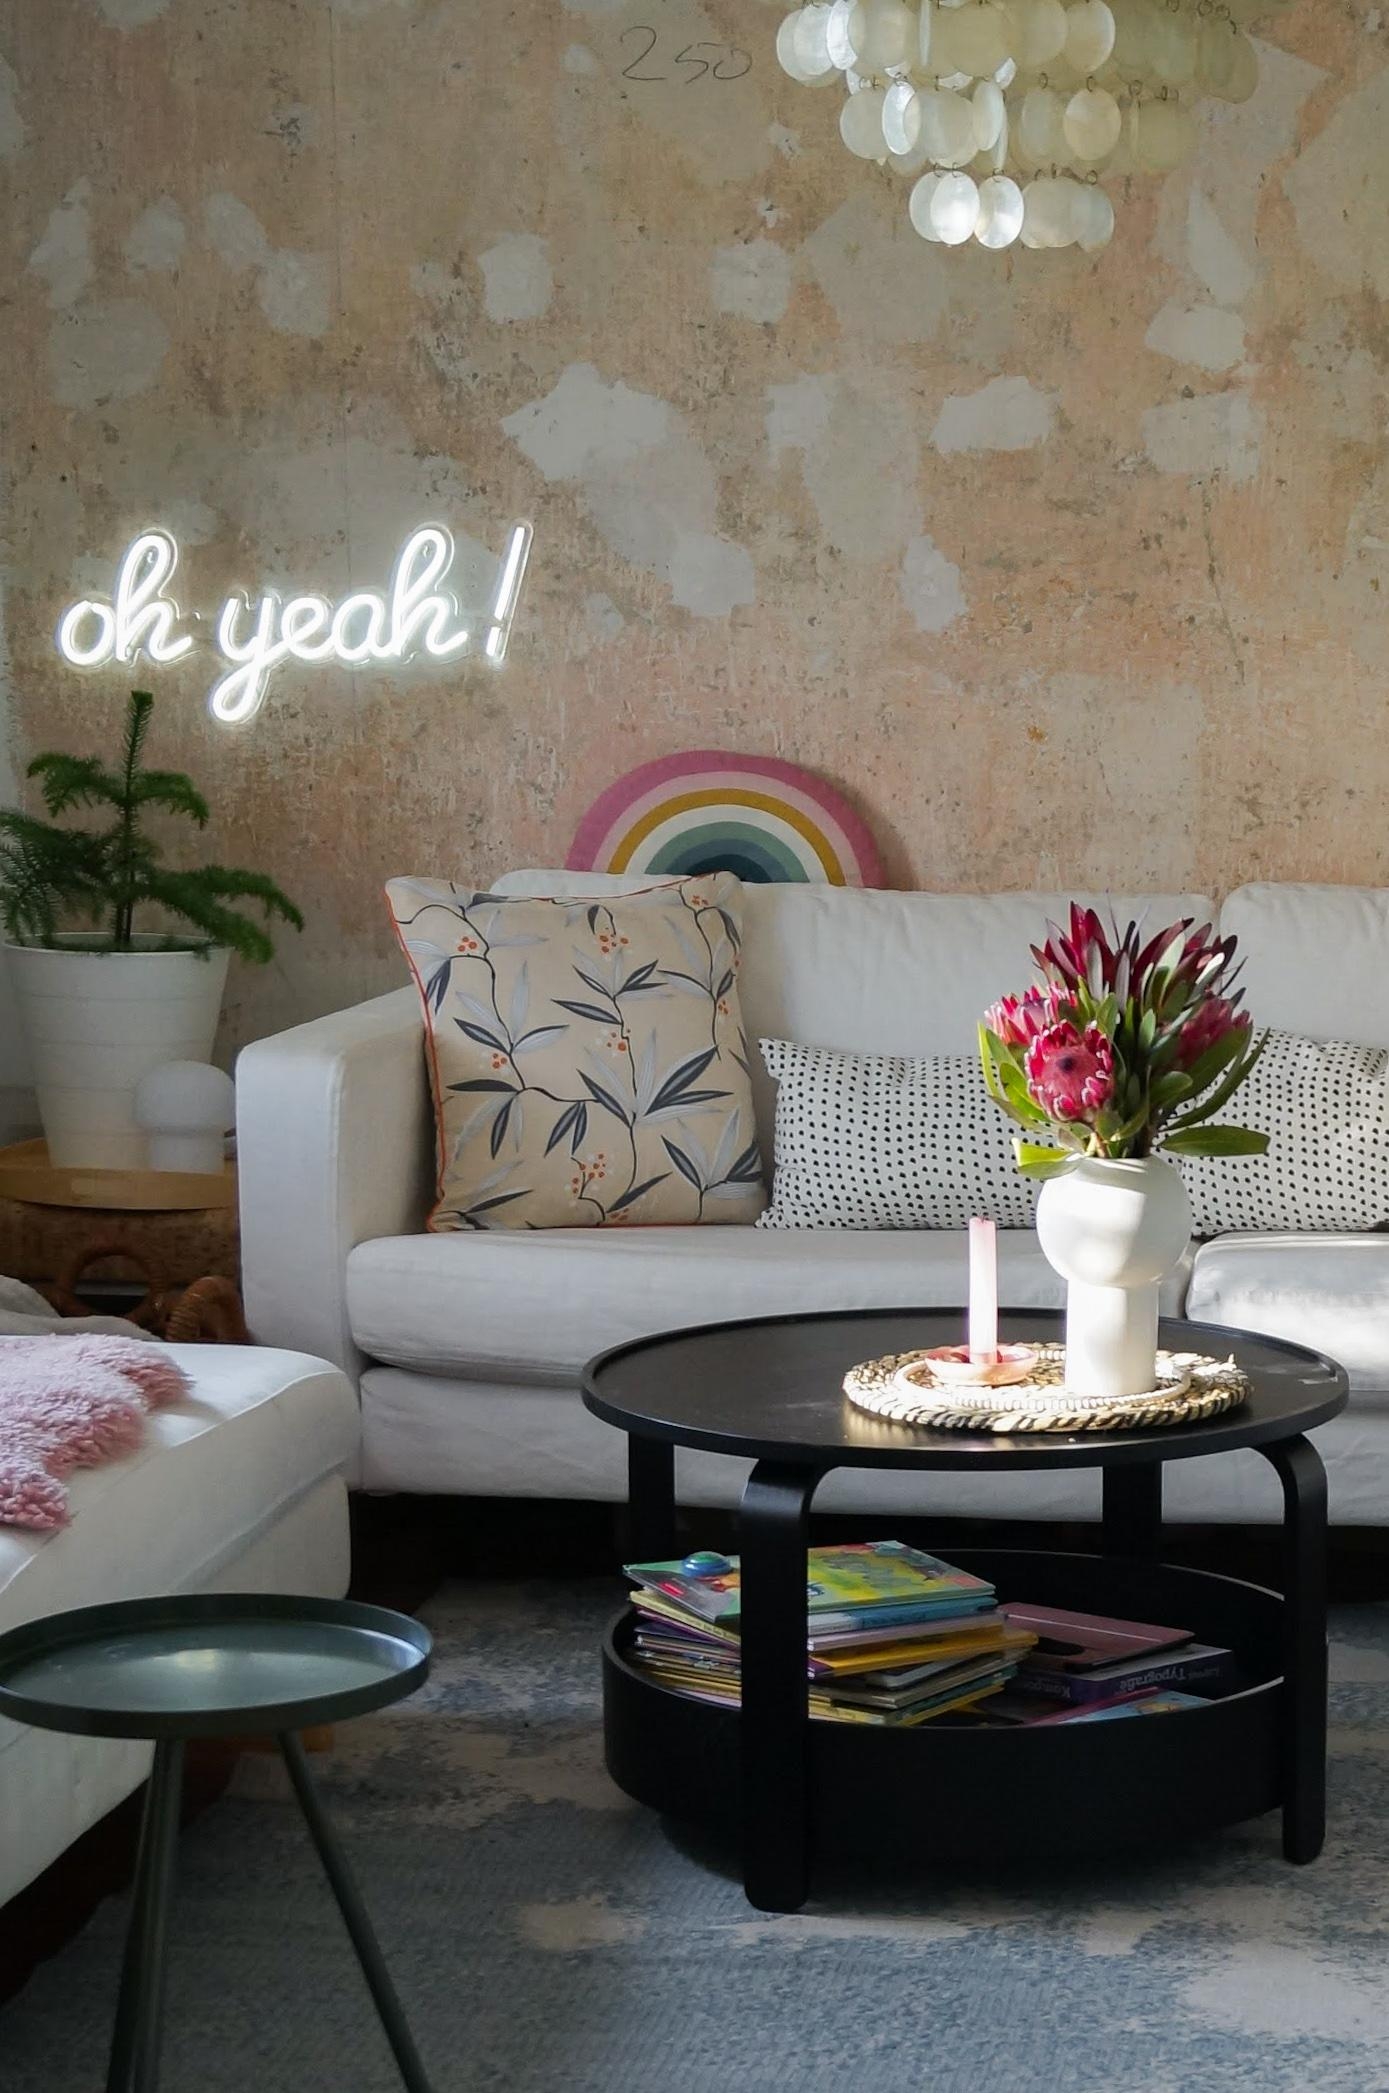 Couch-Zeit

#cozy #hyggelig #wohnzimmer #livingroominterior #wandgestaltung 